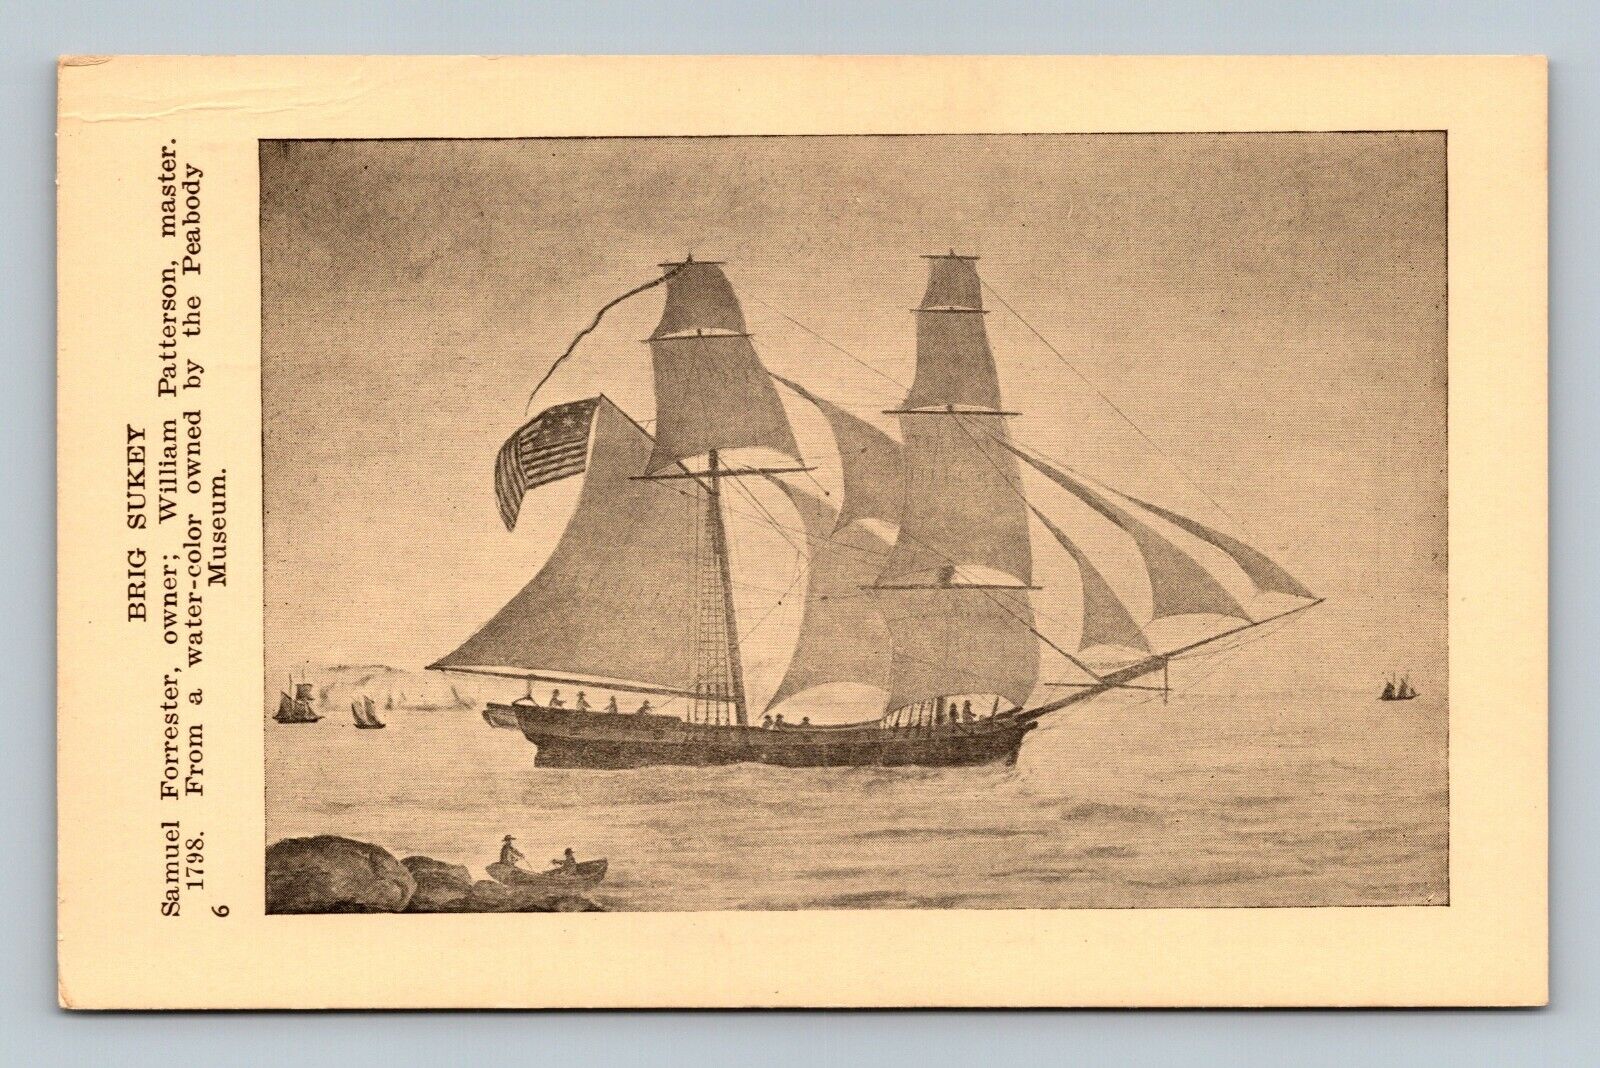 Essex Institute Tall Schooner Ship Series c1920s-30s Postcard #6 BRIG SUKEY